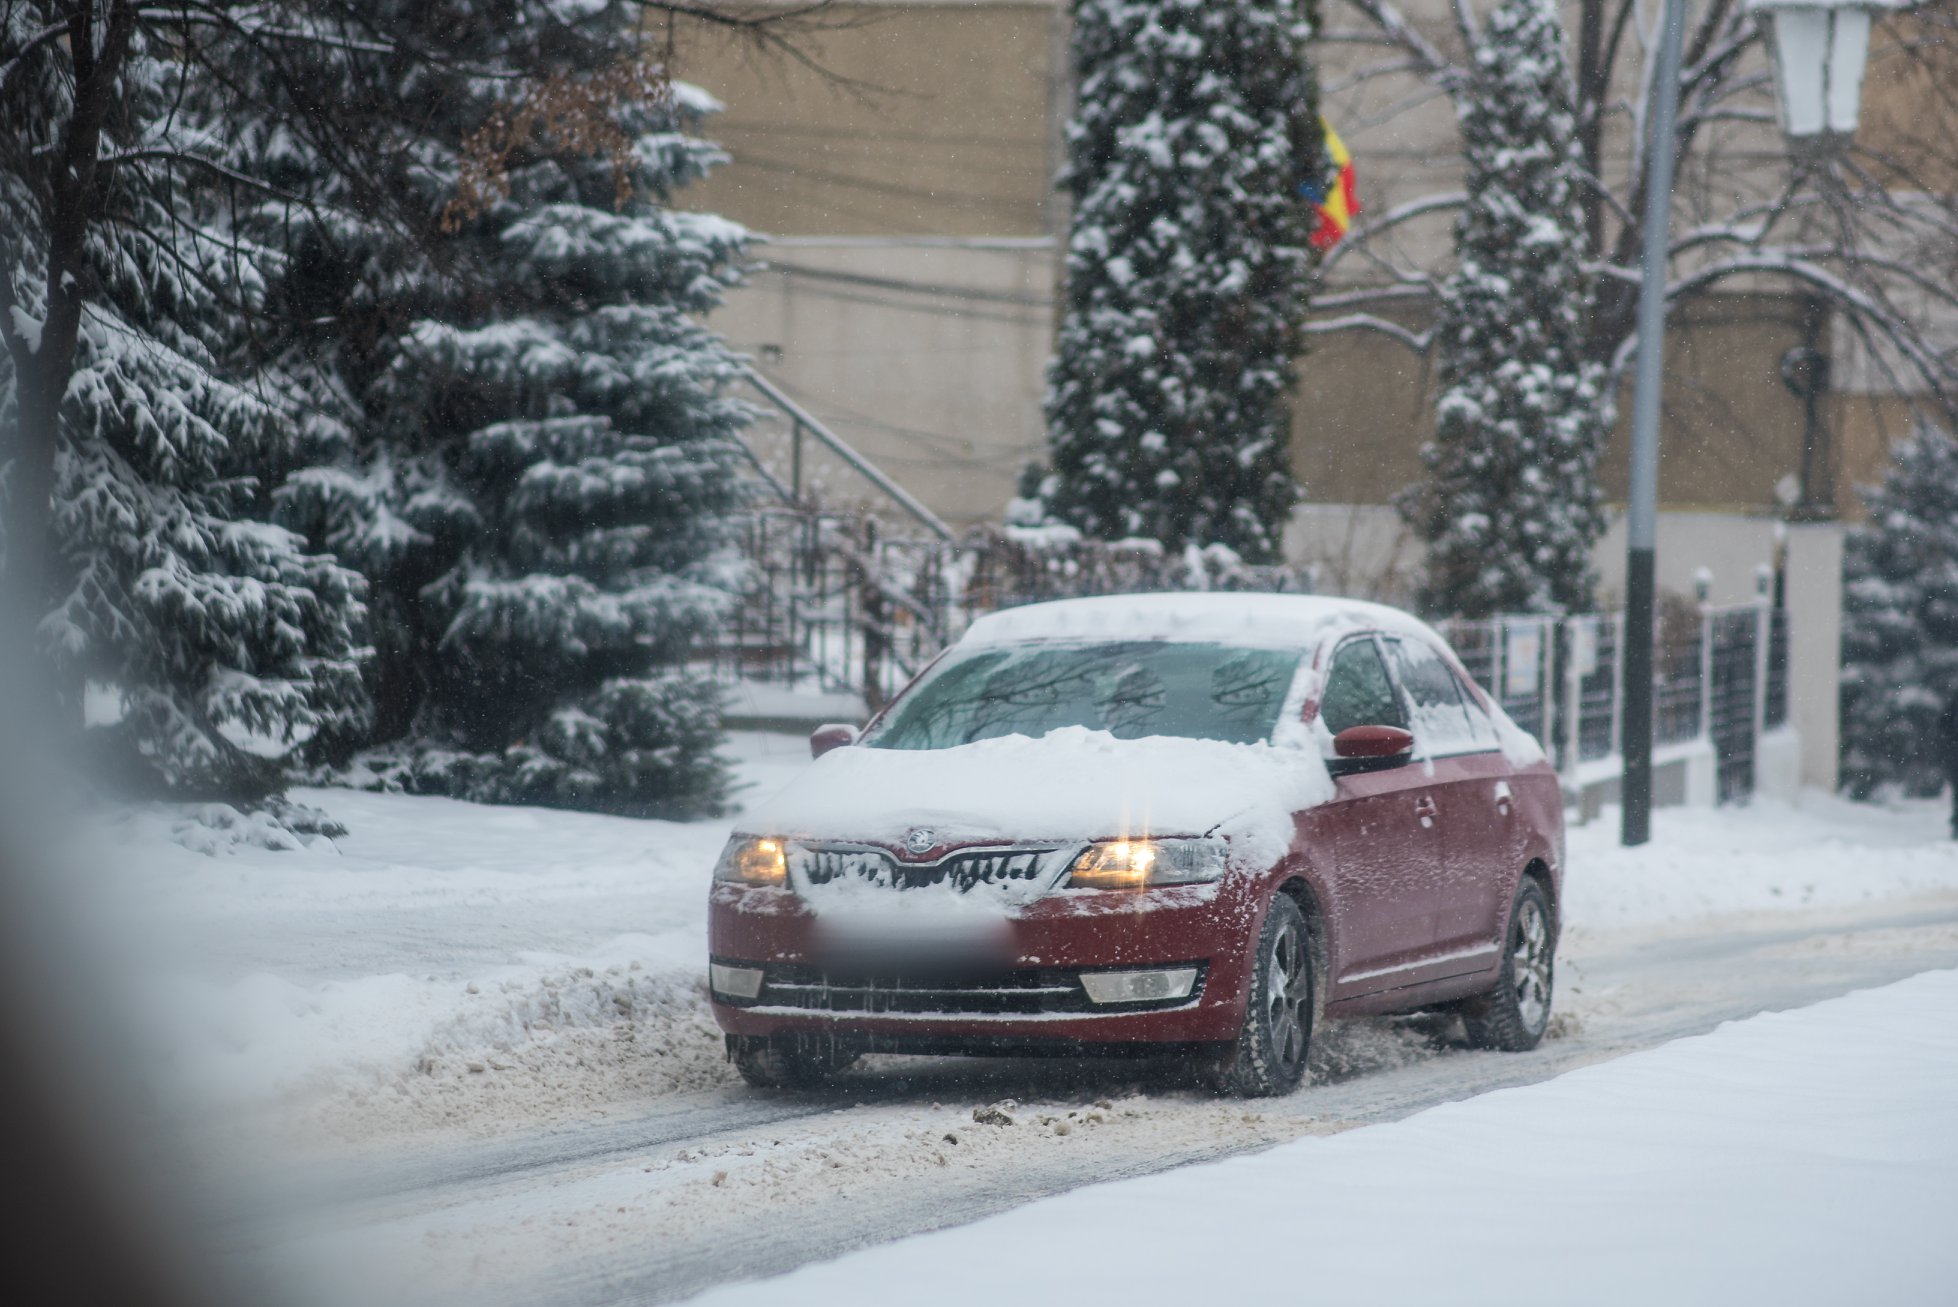 Despre șoferii care circulă cu mașinile acoperite de zăpadă